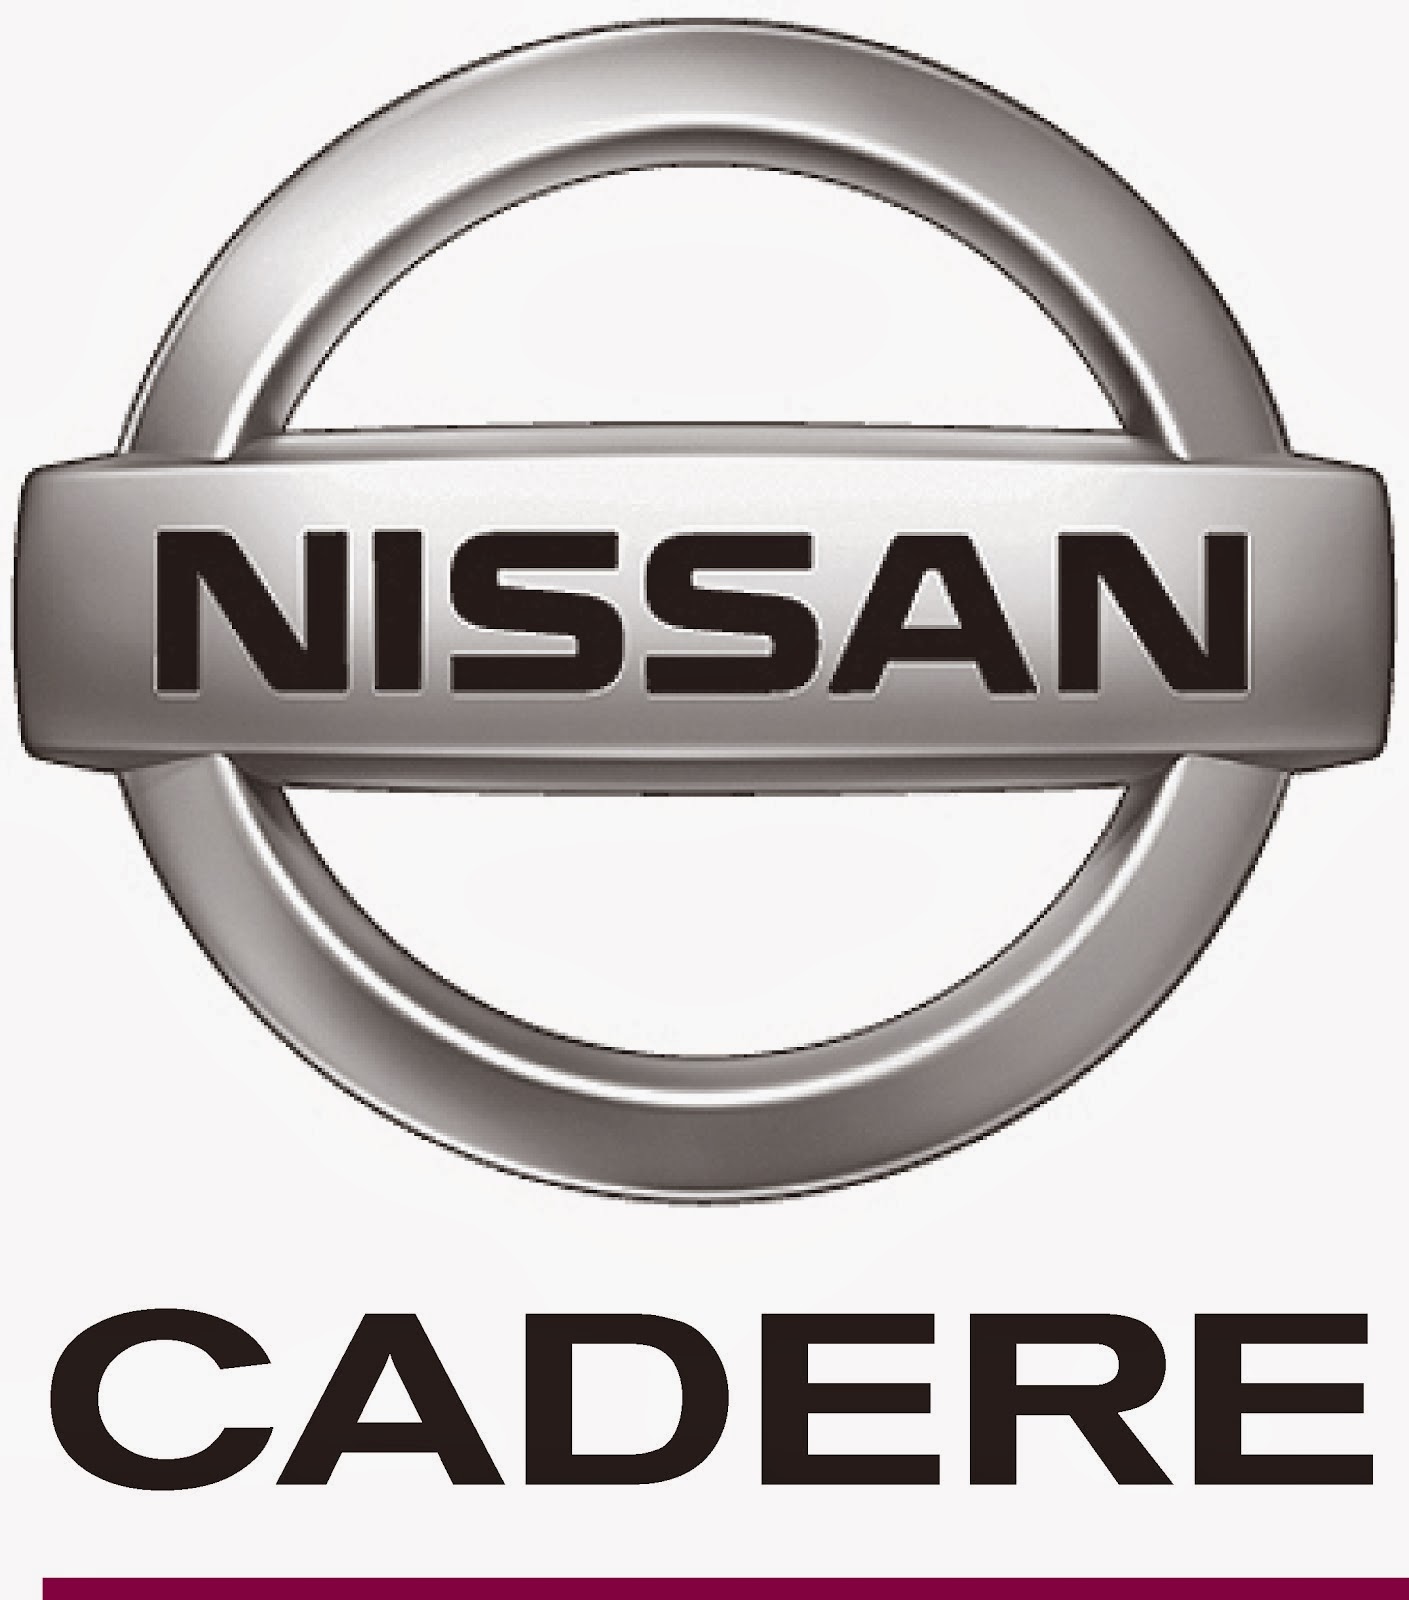 Nissan Cadere